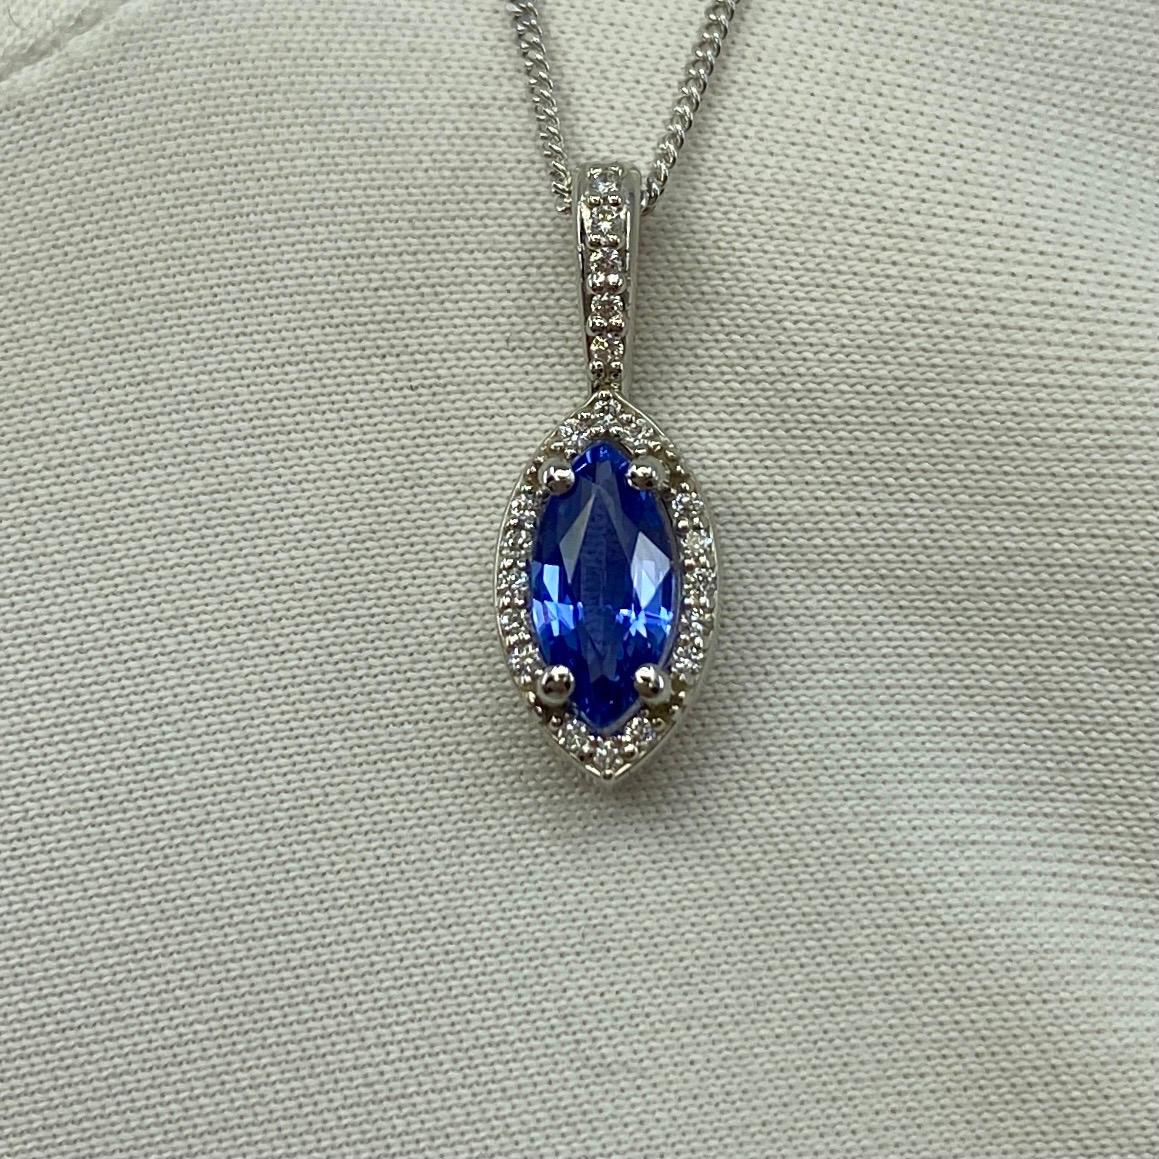 Fine Cornflower Blue Ceylon Sapphire & Diamond Marquise Platinum Halo Anhänger Halskette.

0.65 Karat mittlerer Saphir mit einer feinen, lebhaften kornblumenblauen Farbe und ausgezeichneter Klarheit, sehr sauberer Stein. Hat auch einen